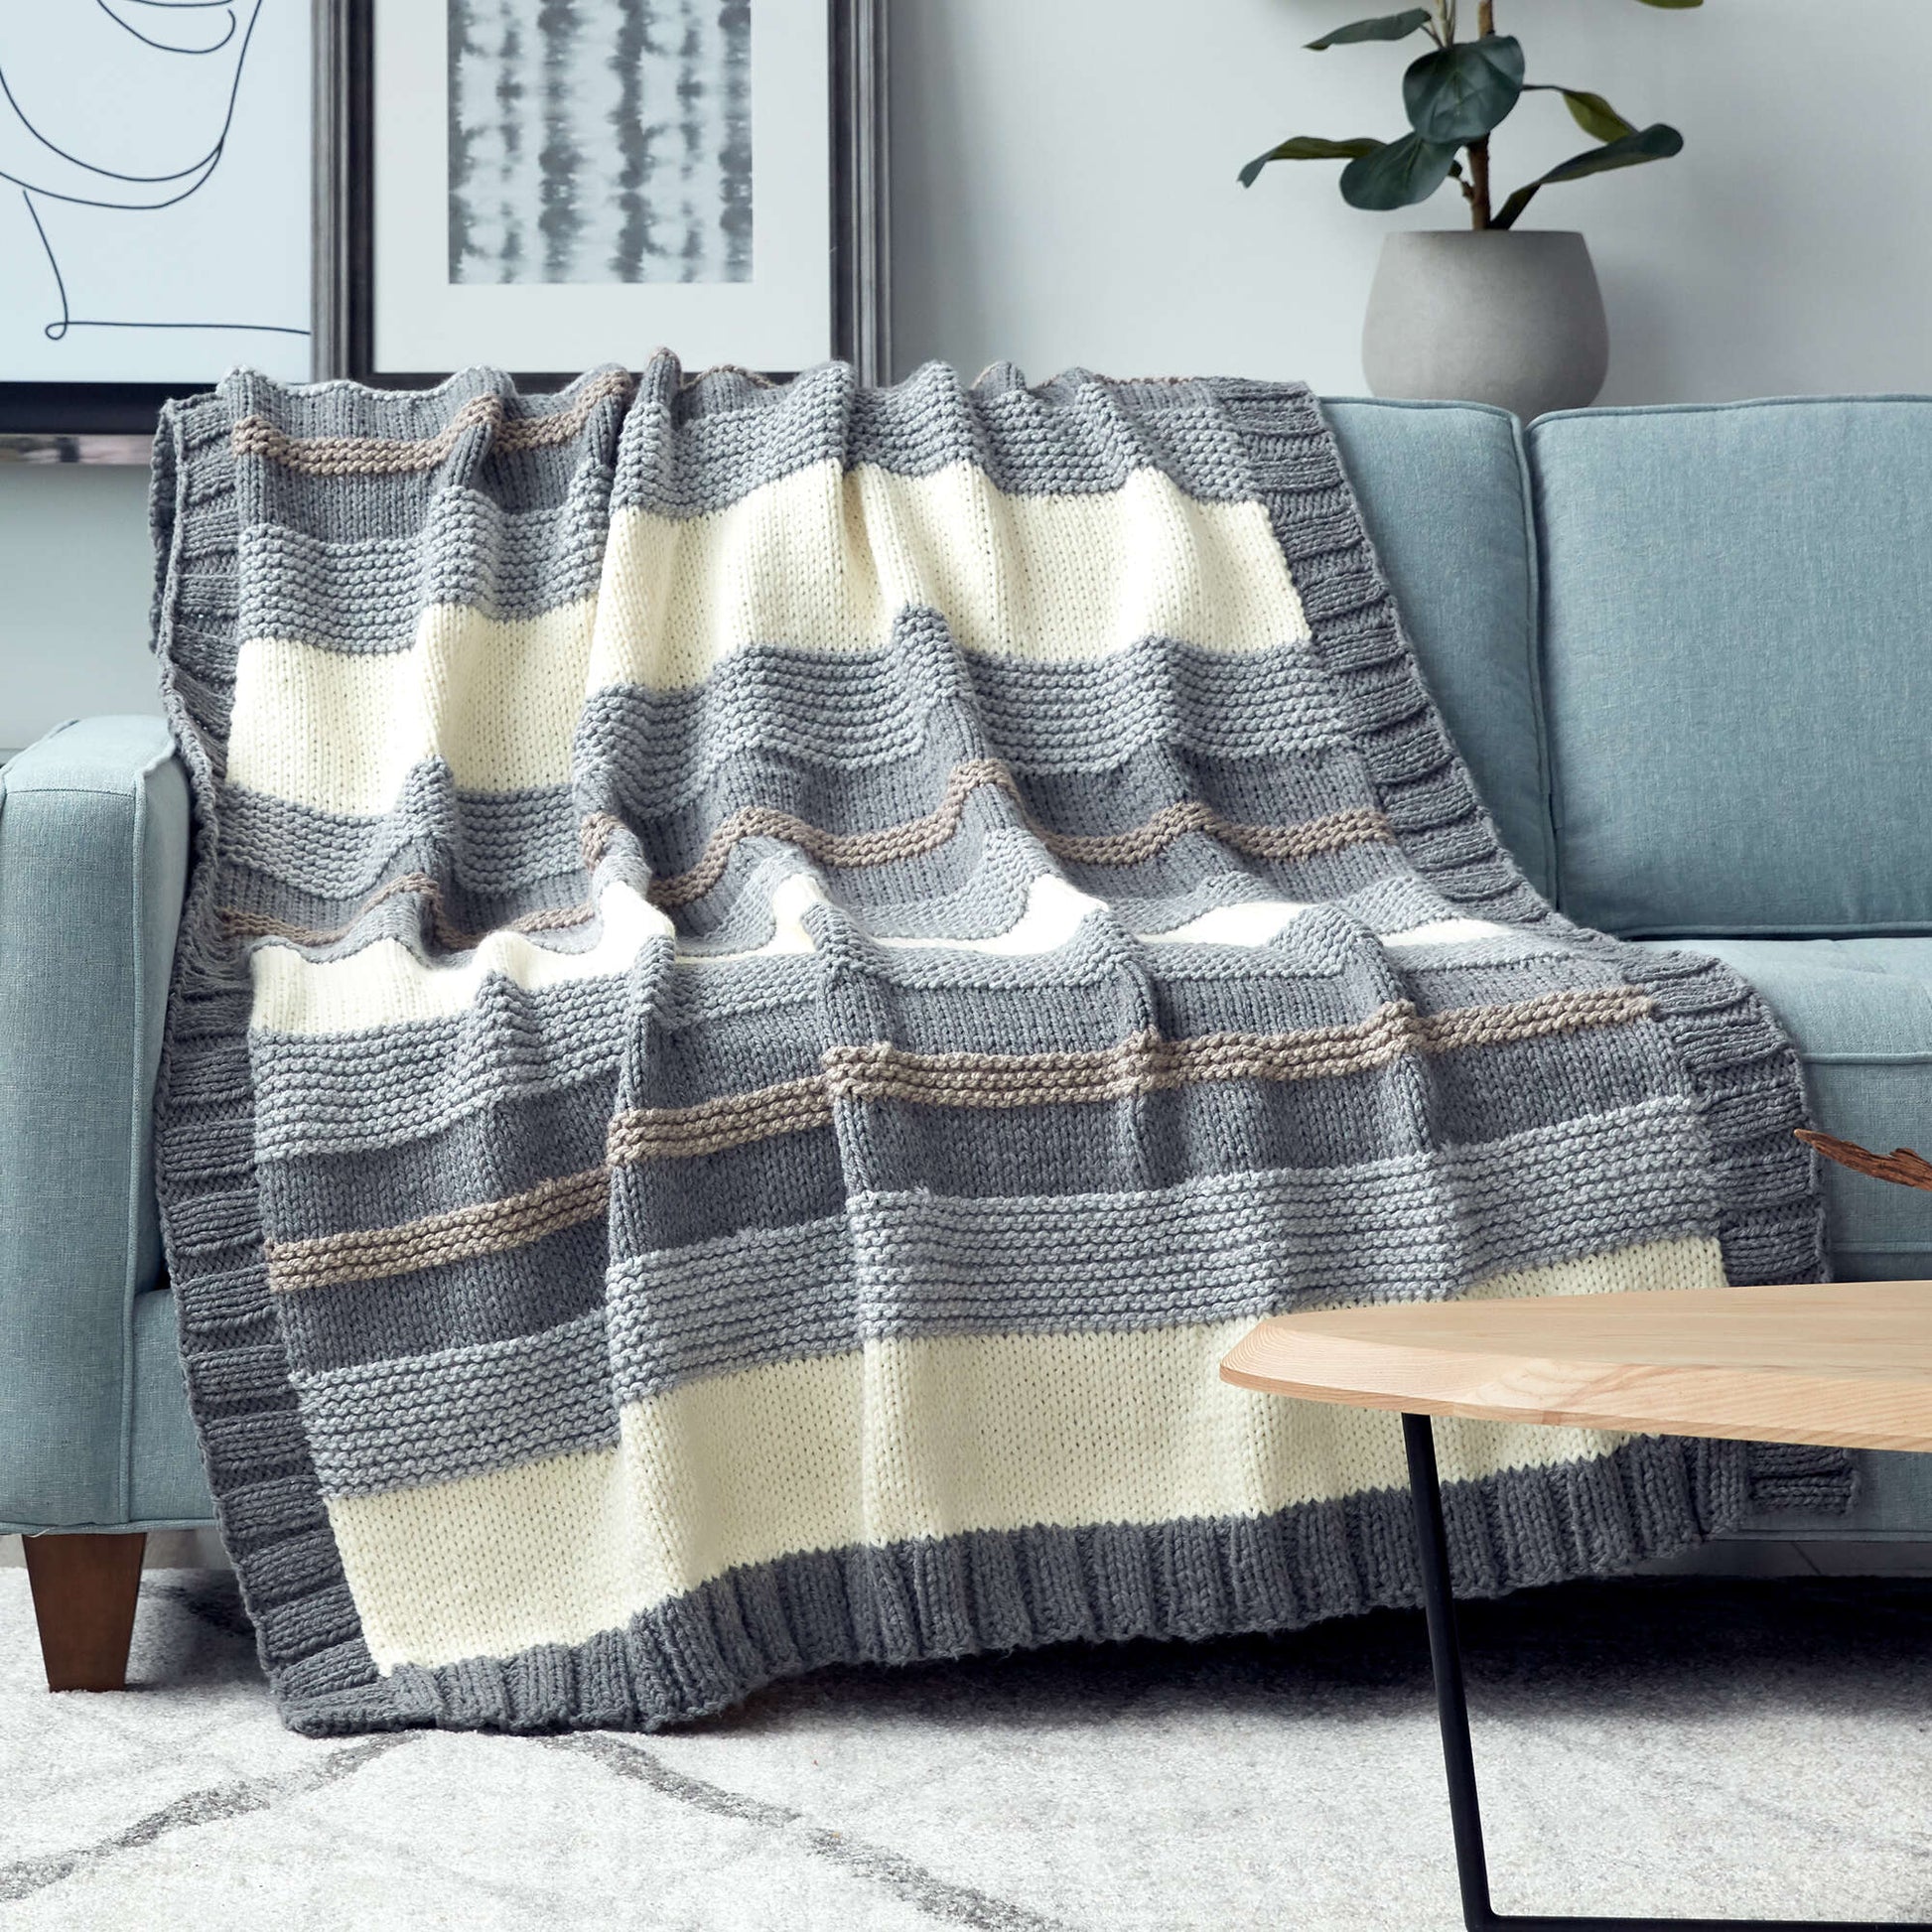 Free Bernat Simple Stripe Knit Blanket Pattern